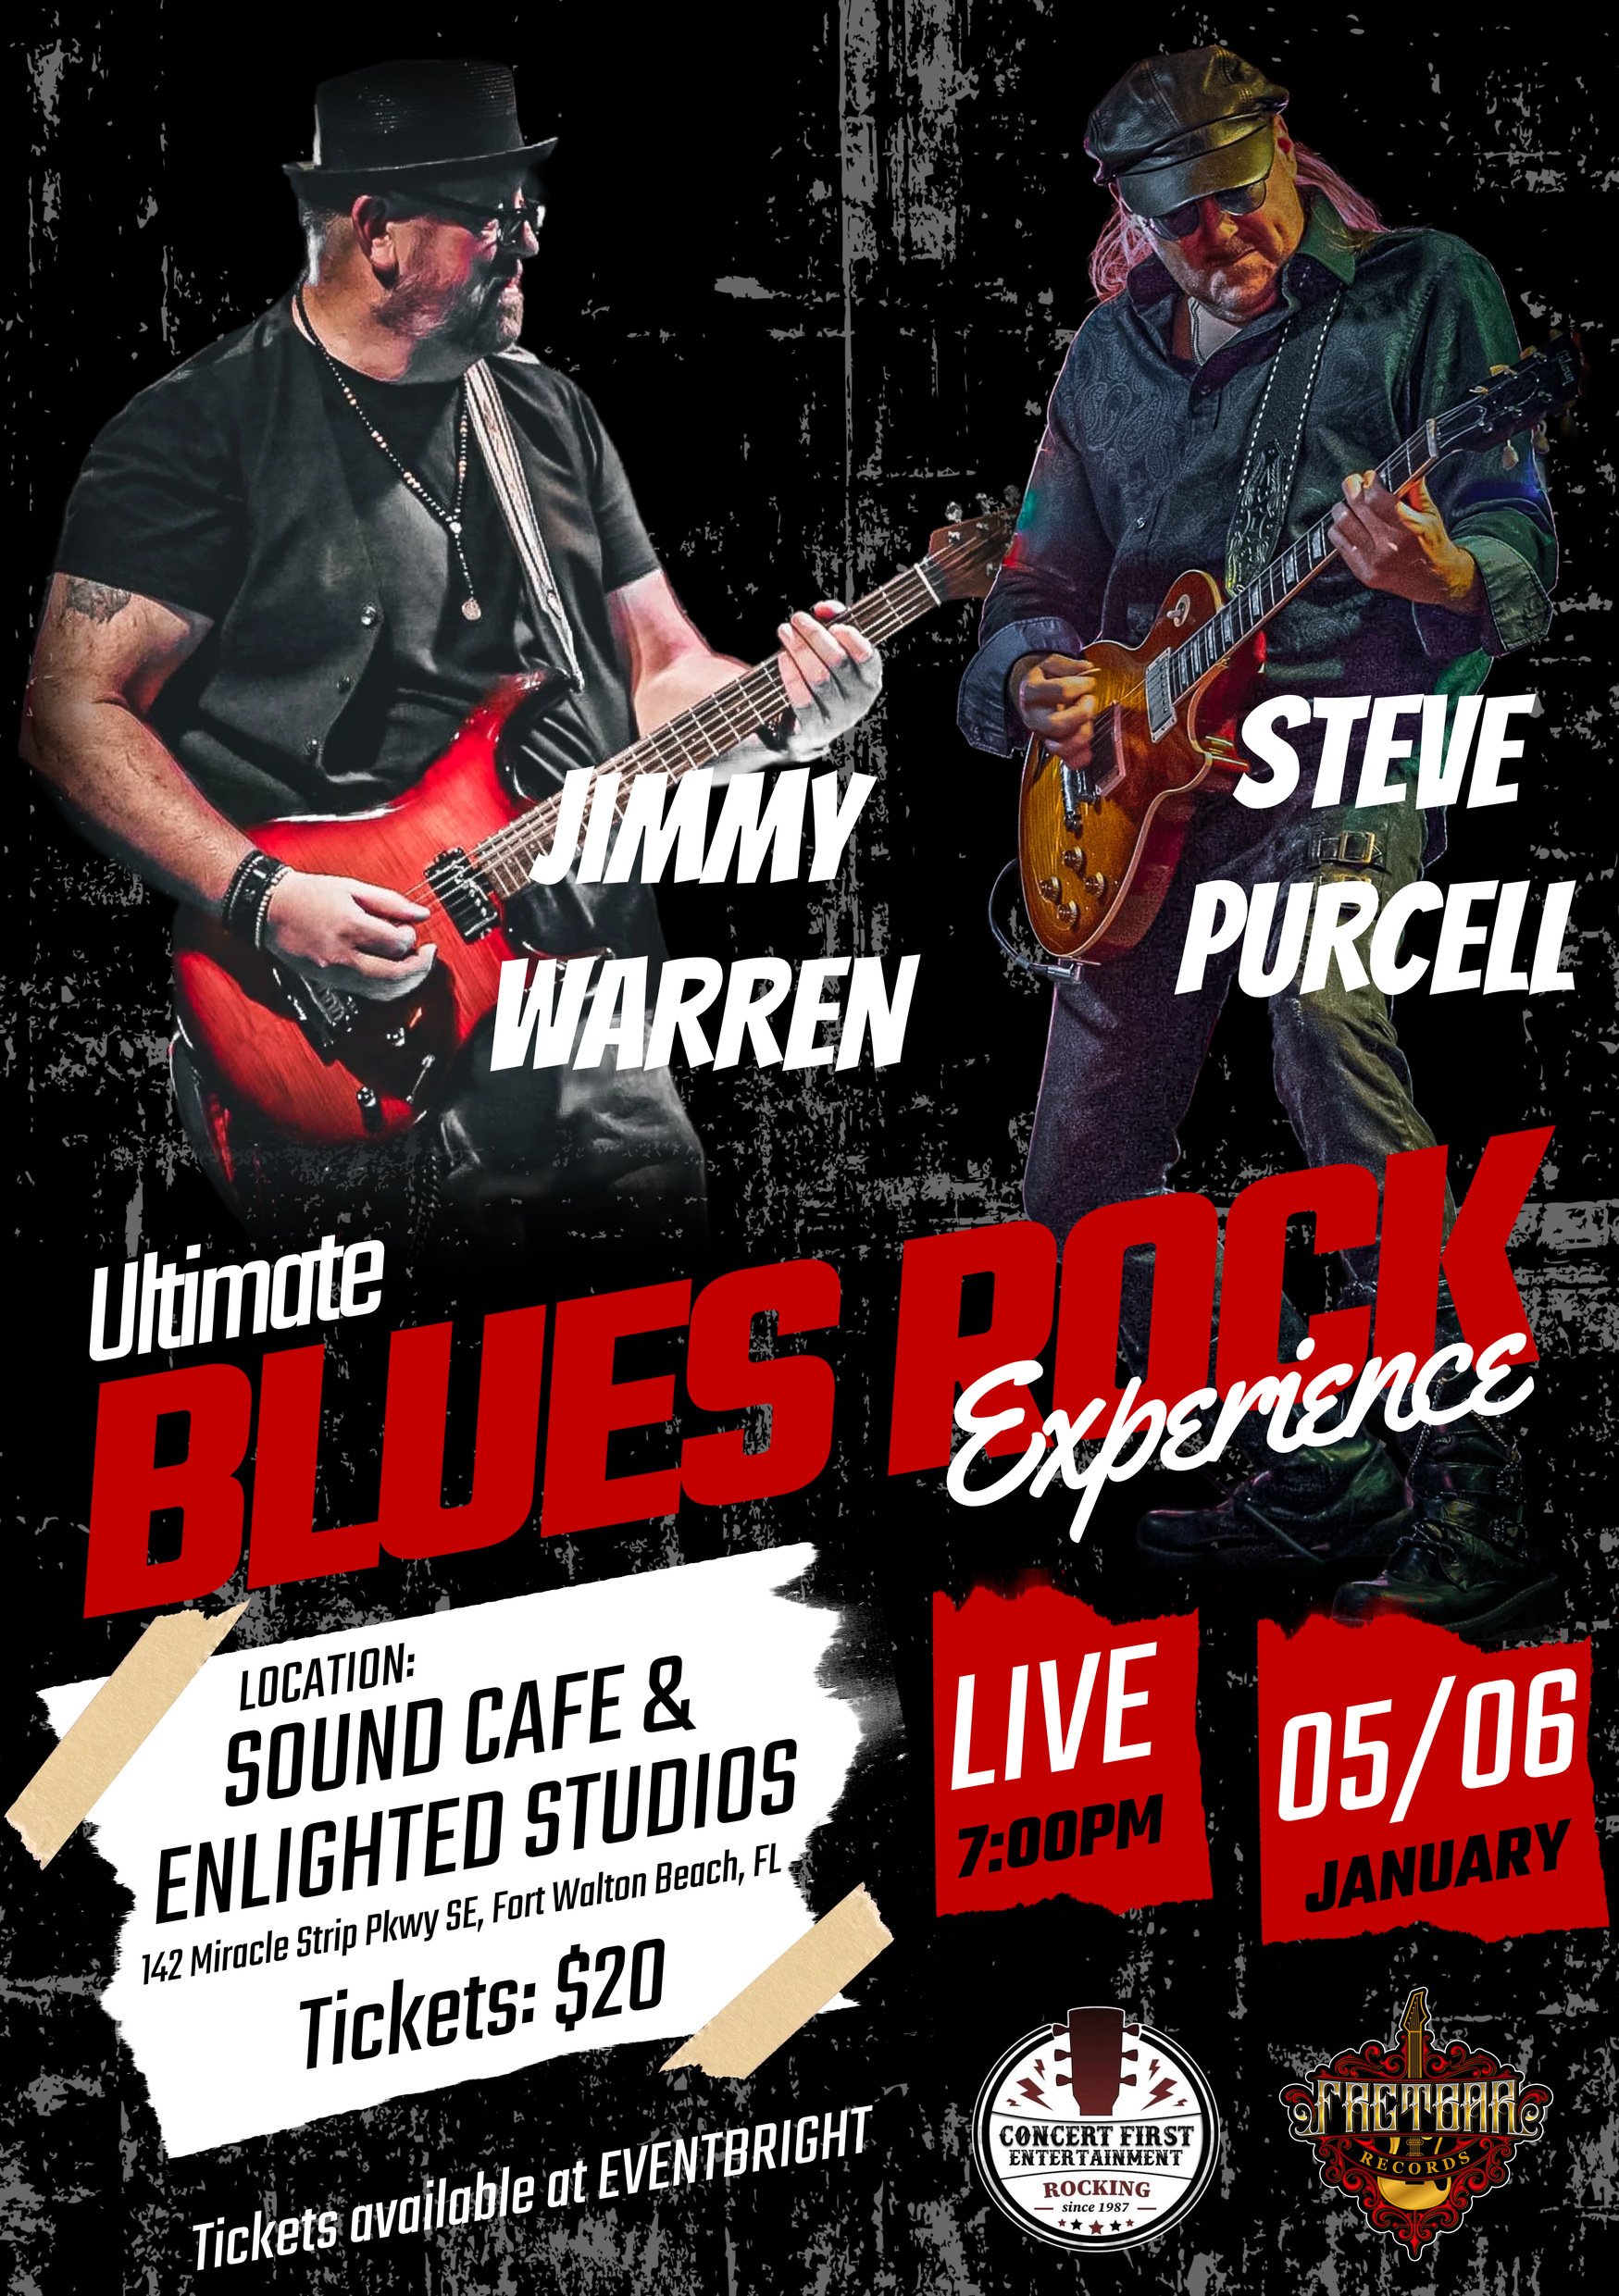 Show: Jimmy Warren & Steve Purcell